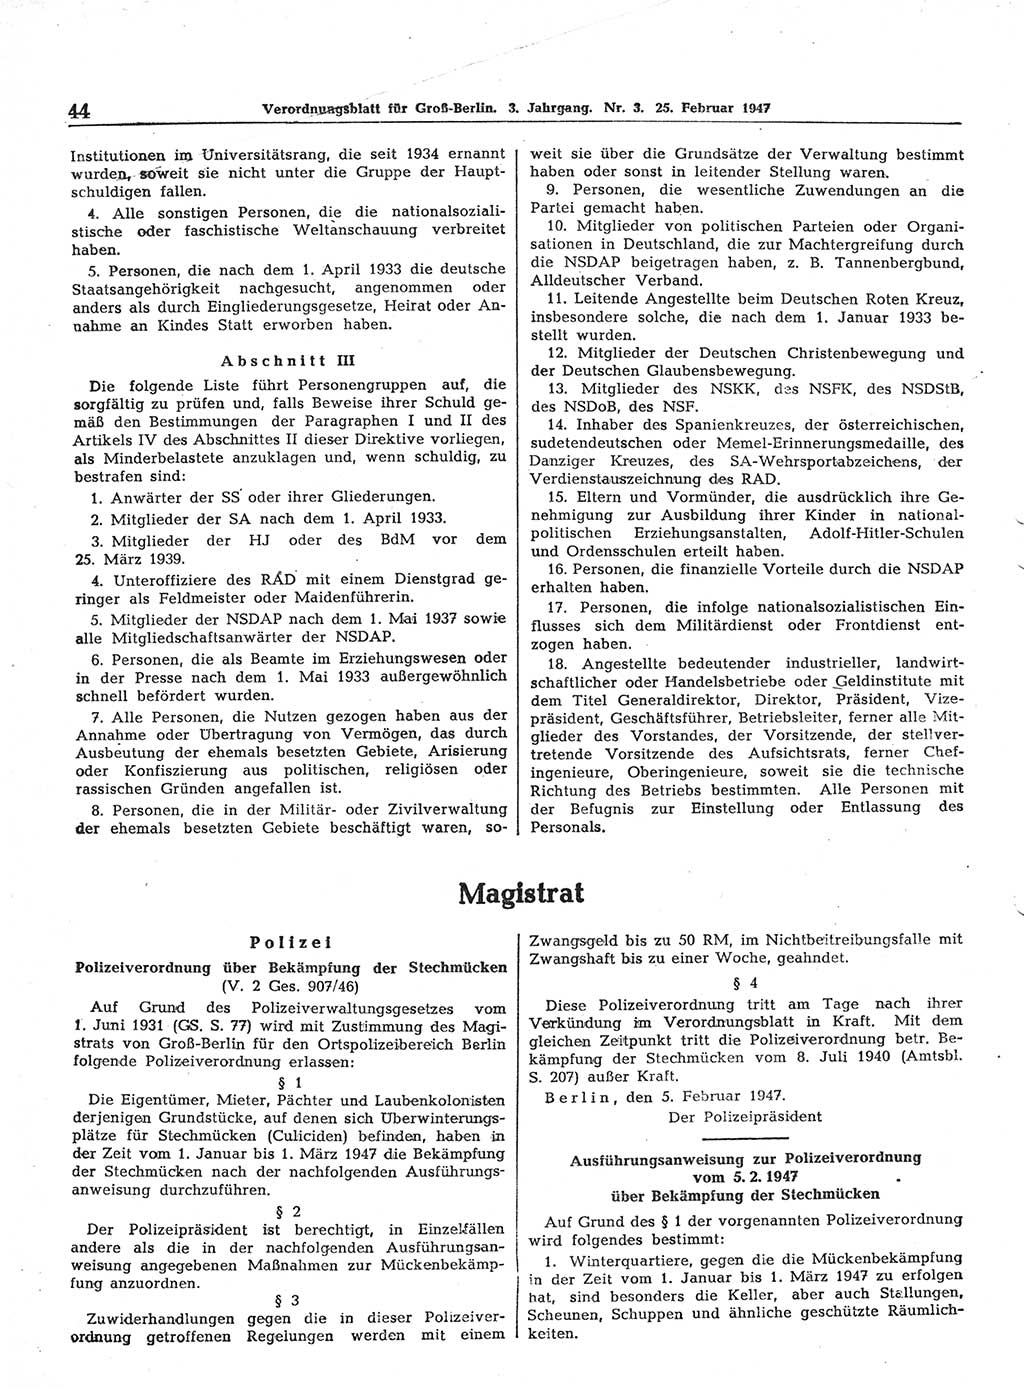 Verordnungsblatt (VOBl.) für Groß-Berlin 1947, Seite 44 (VOBl. Bln. 1947, S. 44)